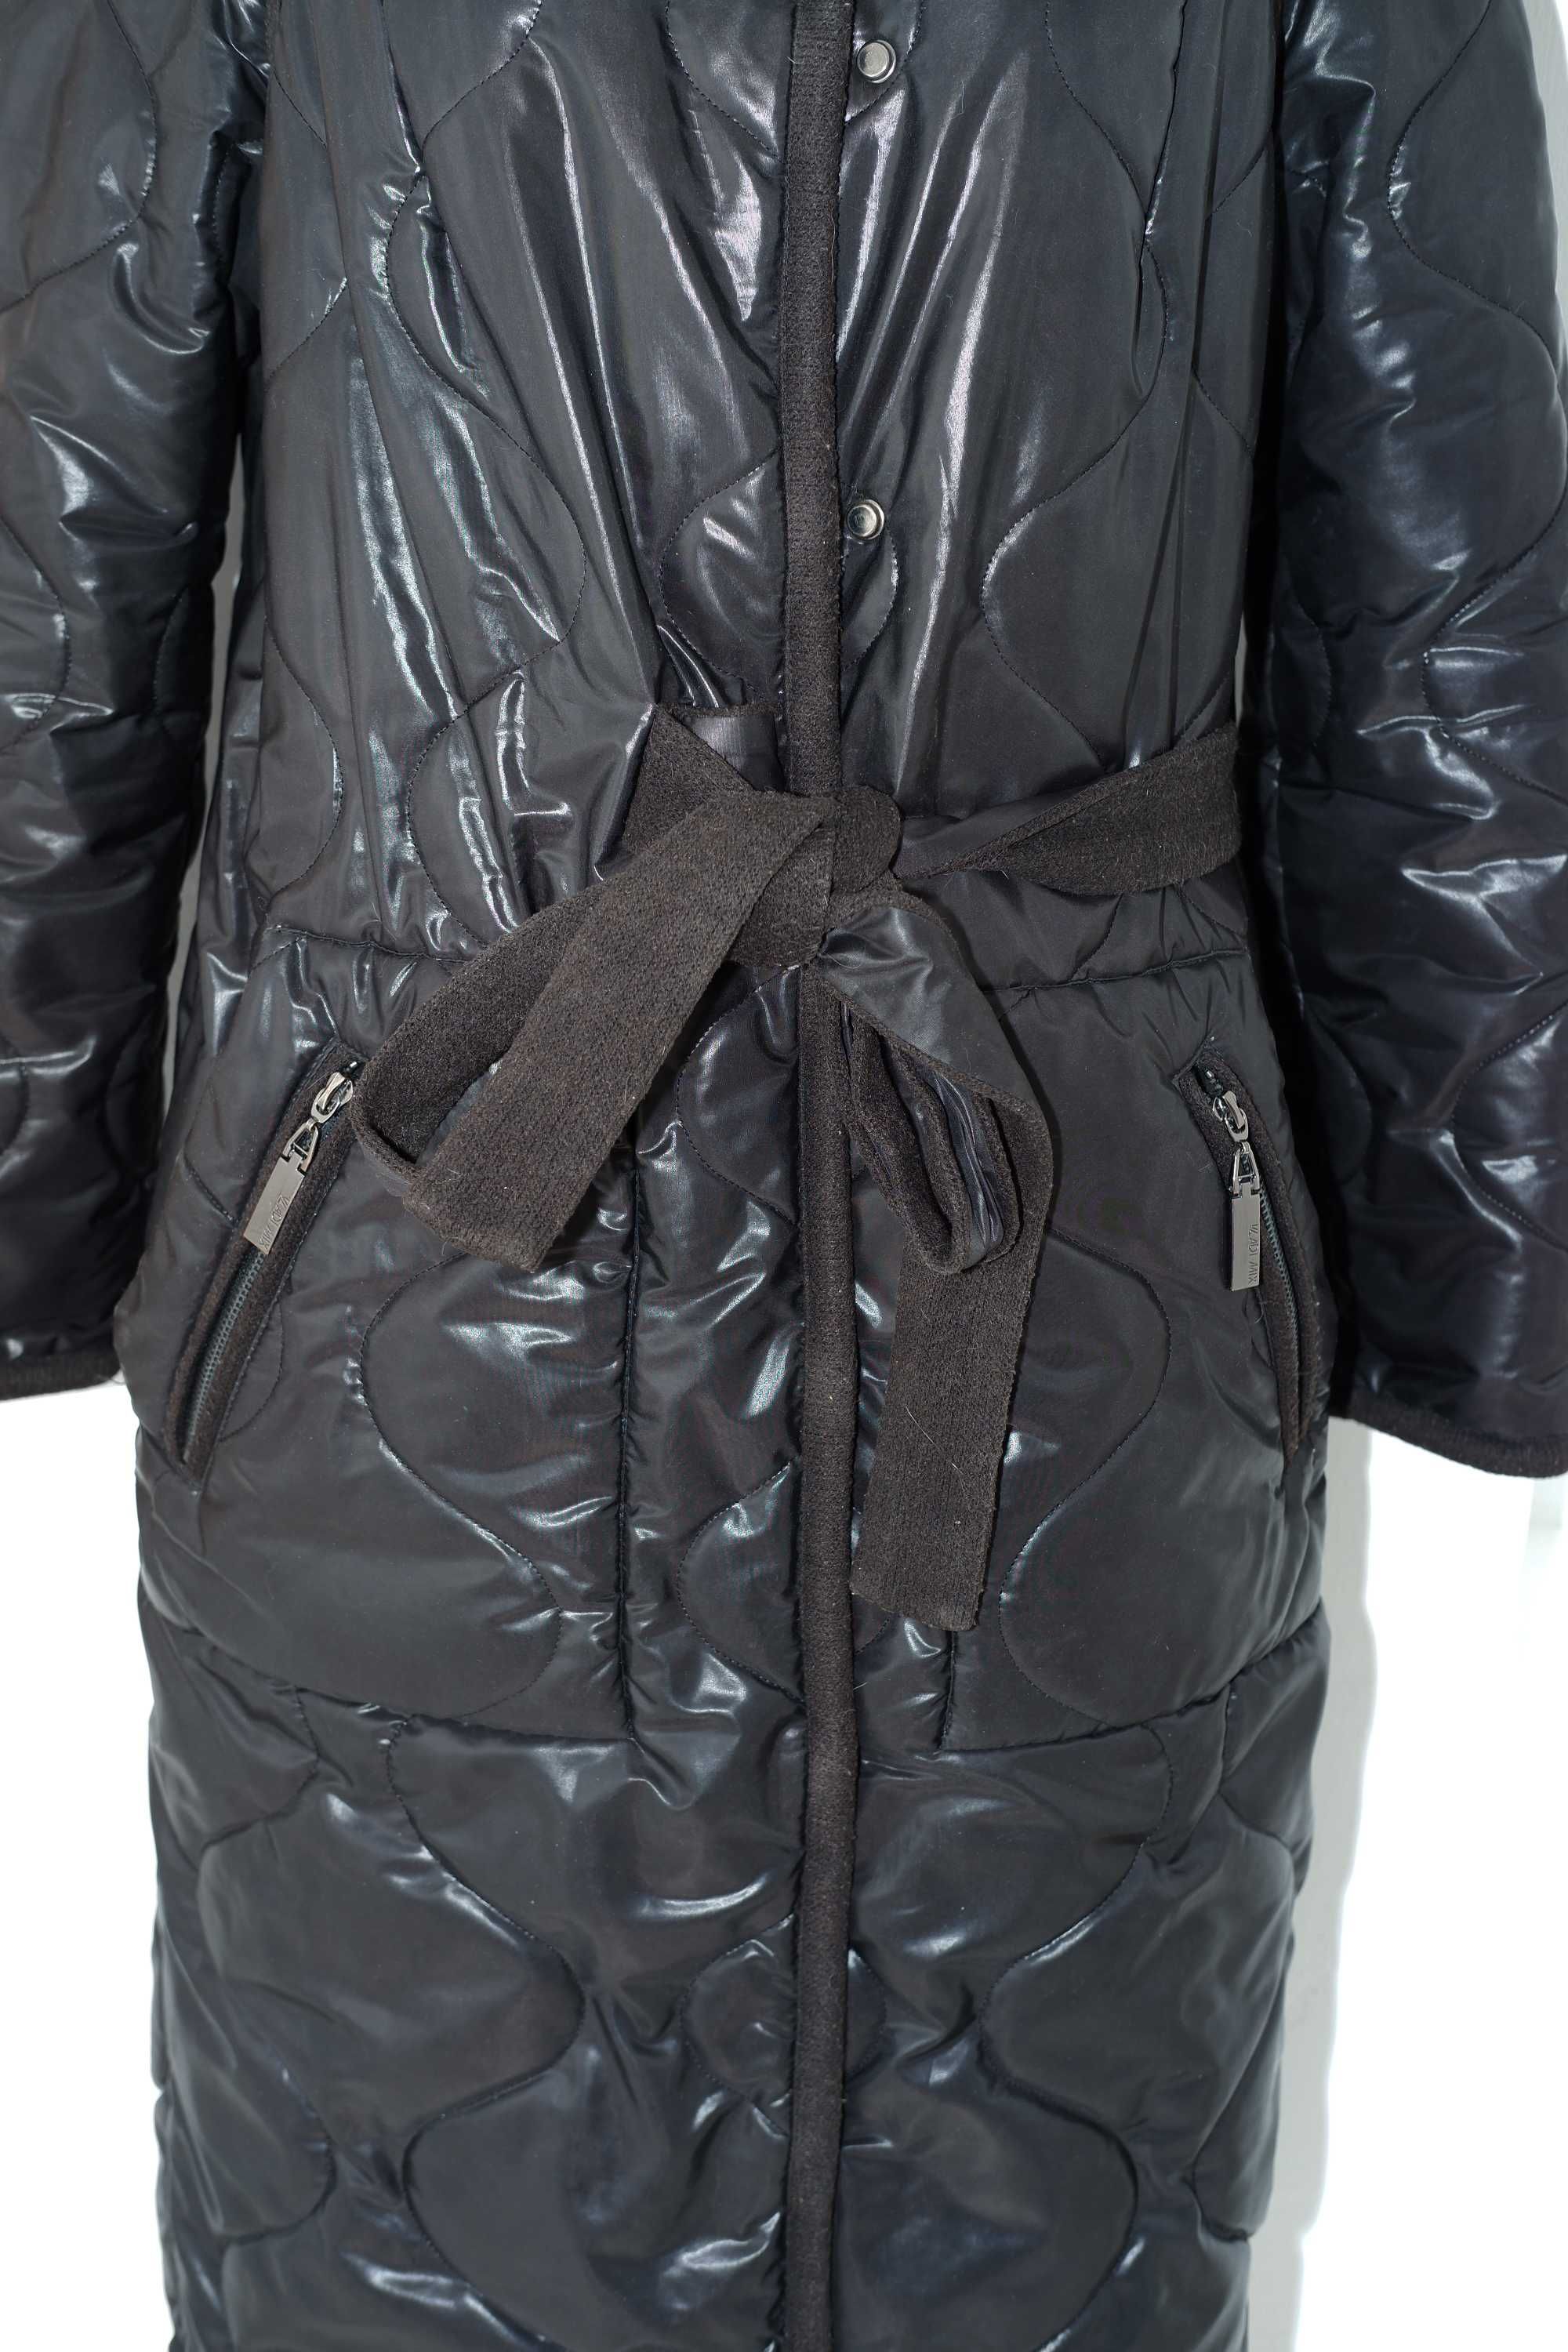 Зимняя женская куртка, зимний женский пуховик